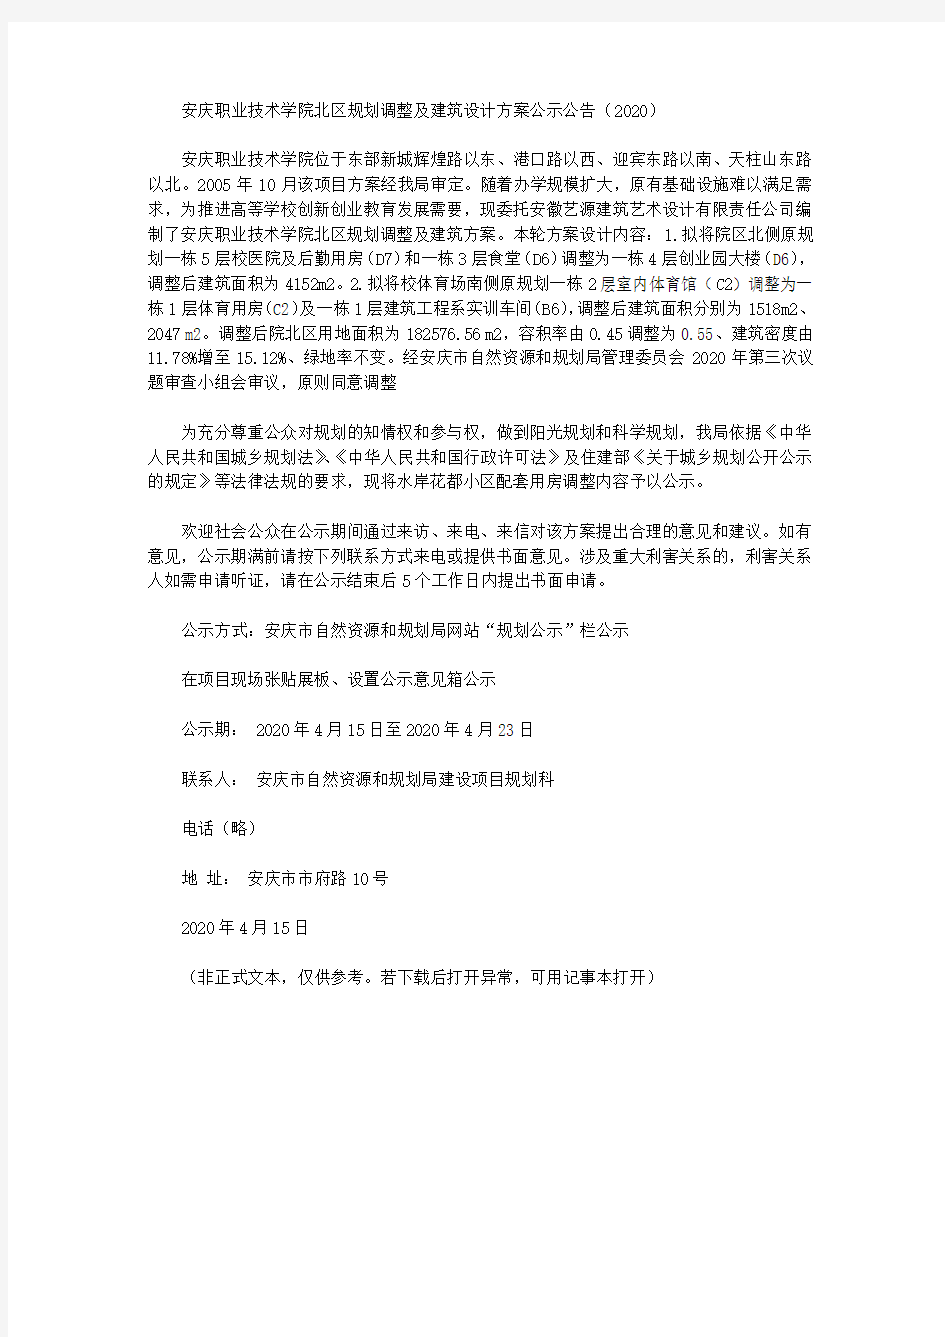 安庆职业技术学院北区规划调整及建筑设计方案公示公告(2020)